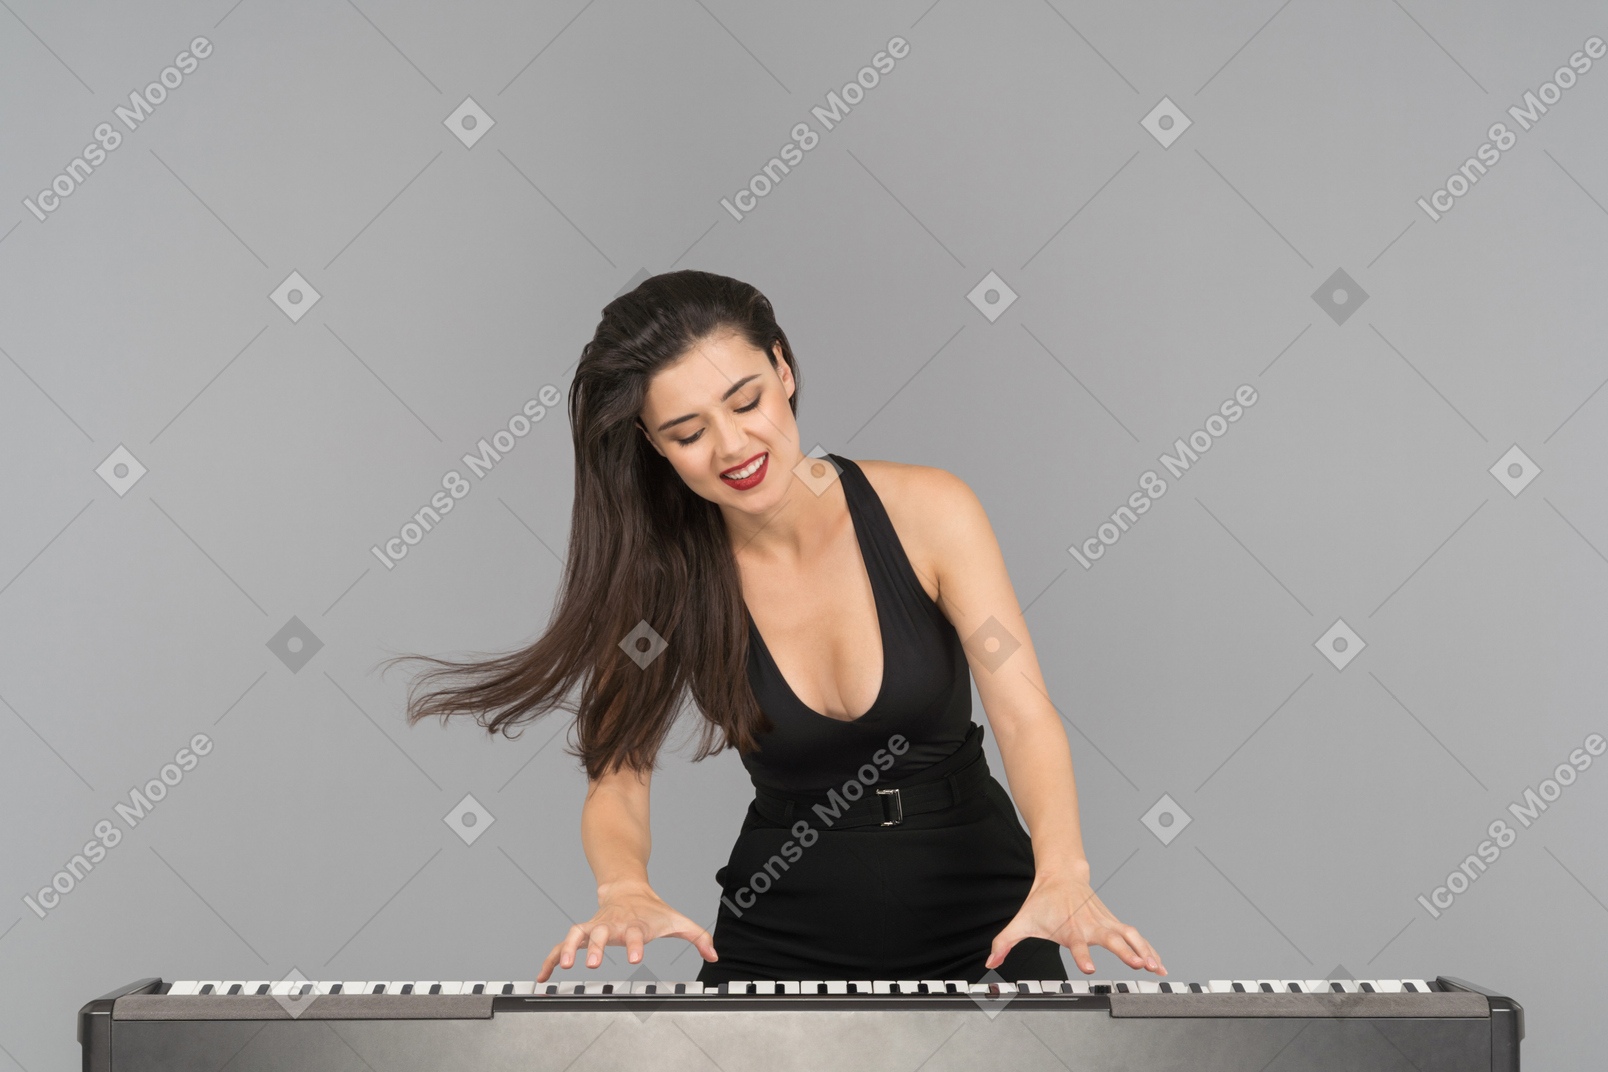 A happy young woman enjoying playing piano